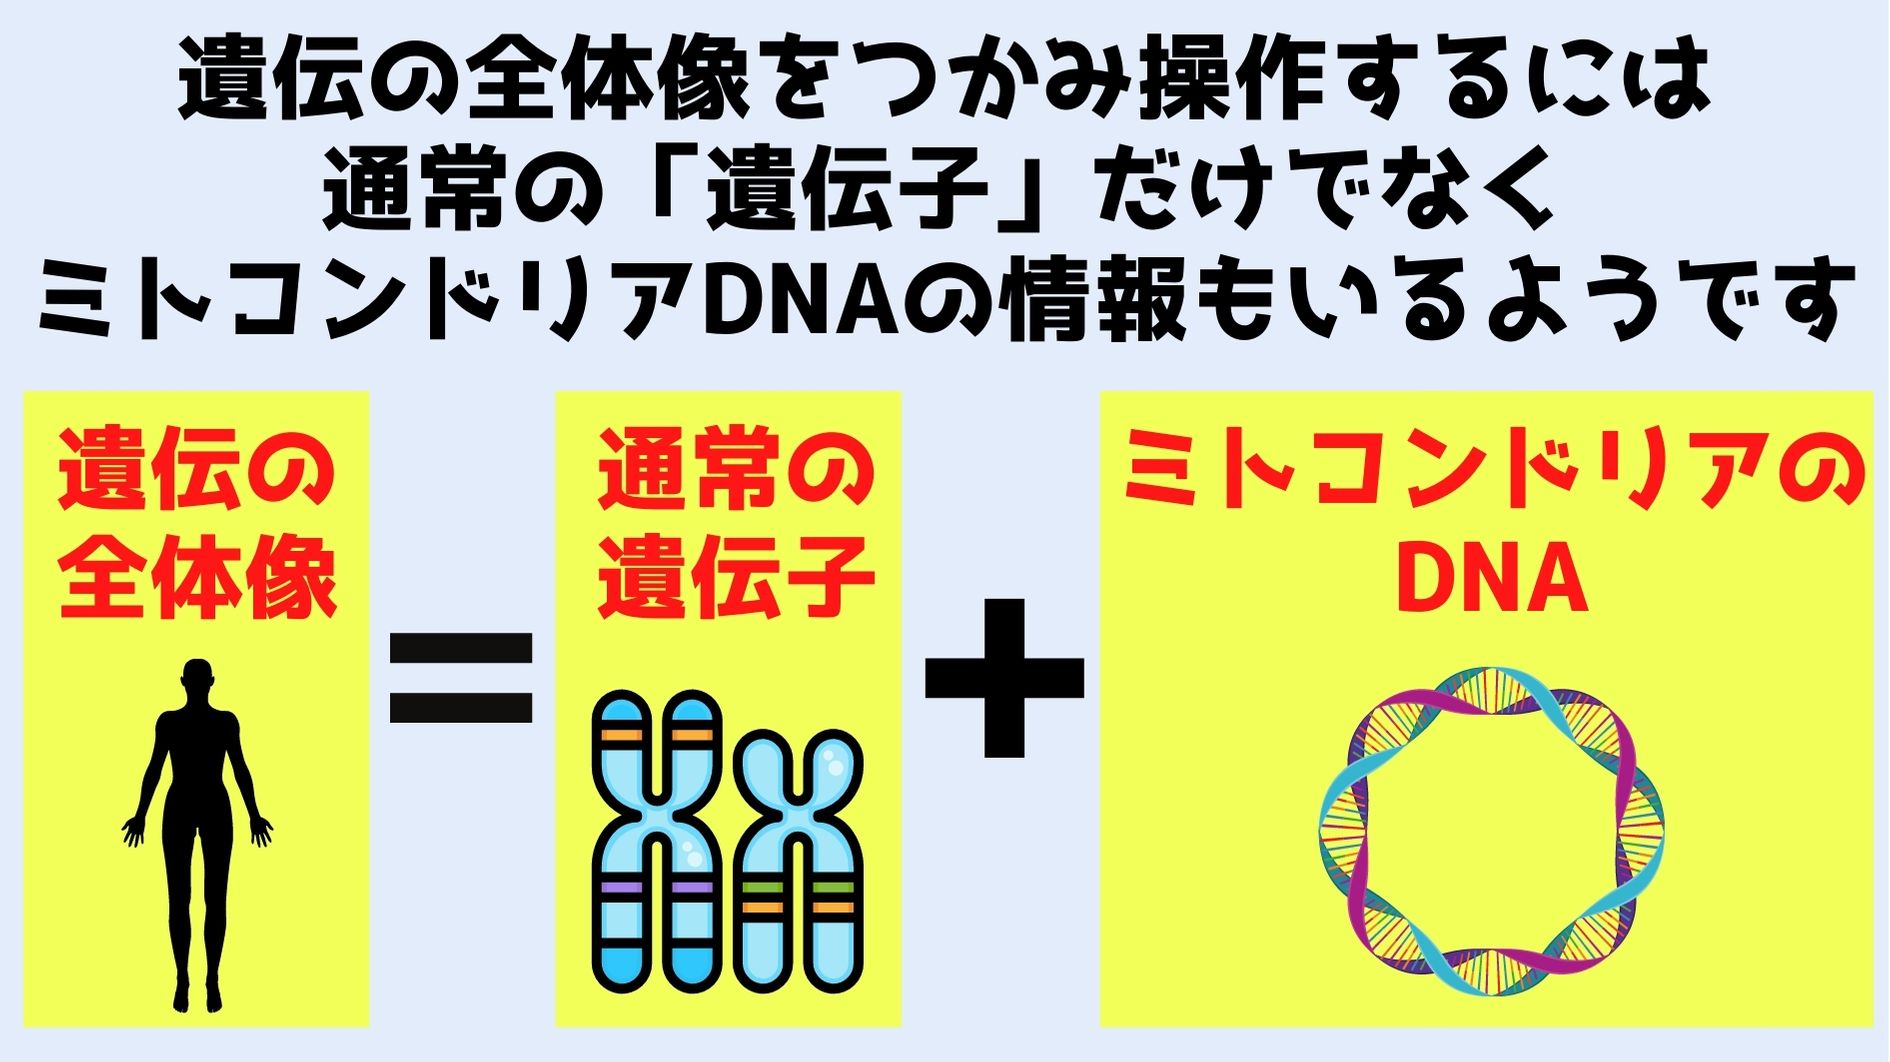 正確な遺伝子治療を行うには核DNAに加えてミトコンドリアDNAの編集も必要になる